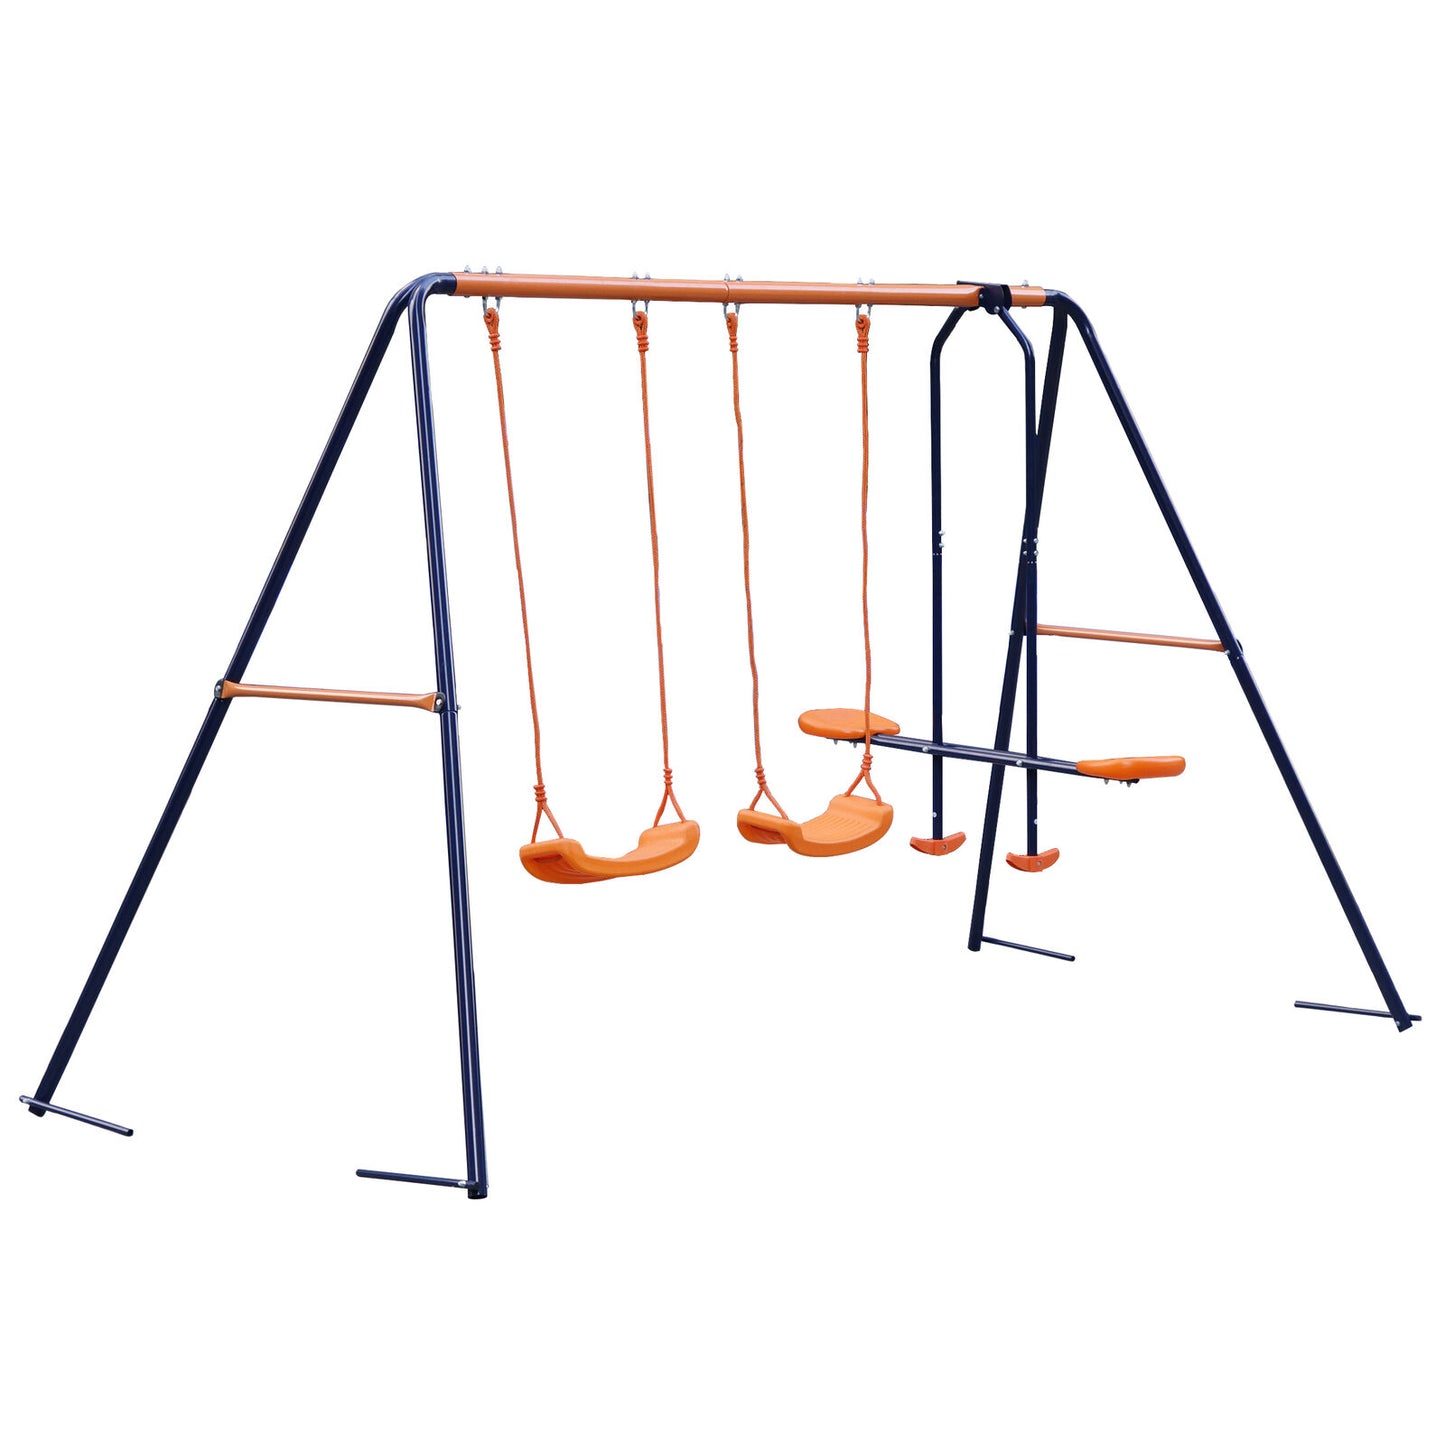 Child Kids Play Garden Outdoor Double Swing Set Heavy Duty Metal Frame Swing